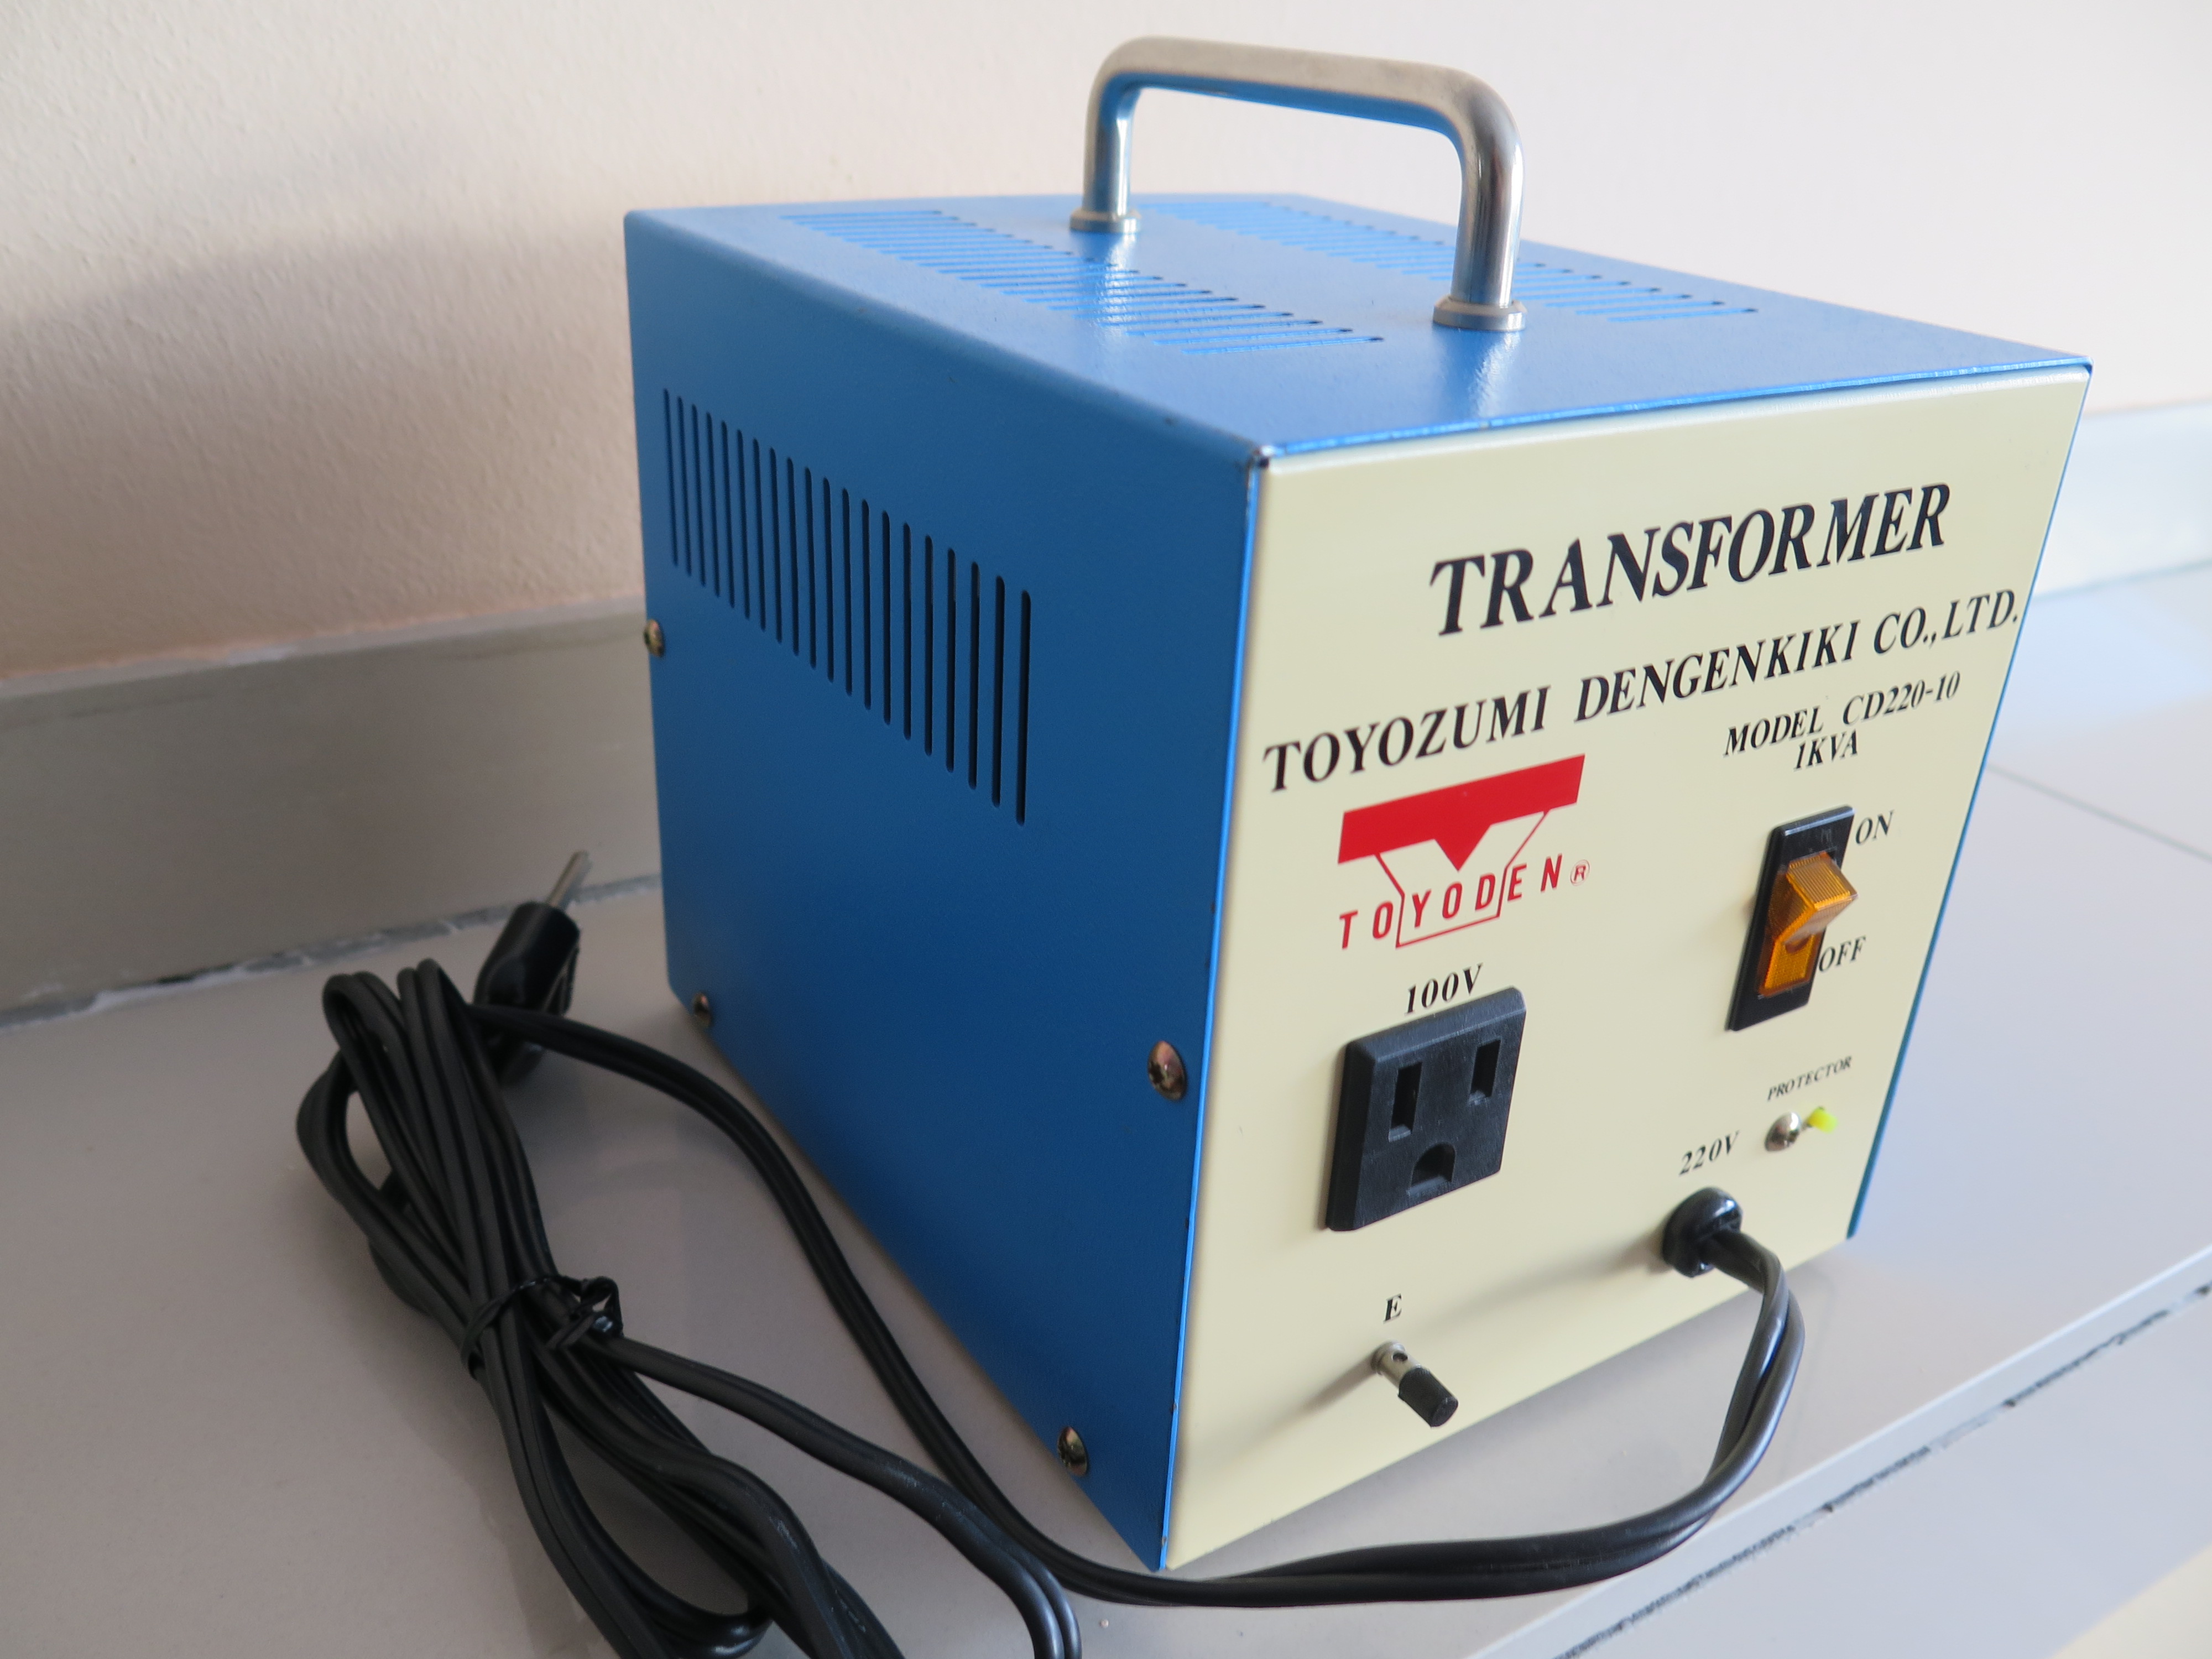 Понижающий трансформатор 100 вольт. Понижающий трансформатор штиль 220/100 1.6. Трансформатор 220 на 100 вольт. Трансформатор Toyozumi. Трансформатор Toyozumi 220-100в.